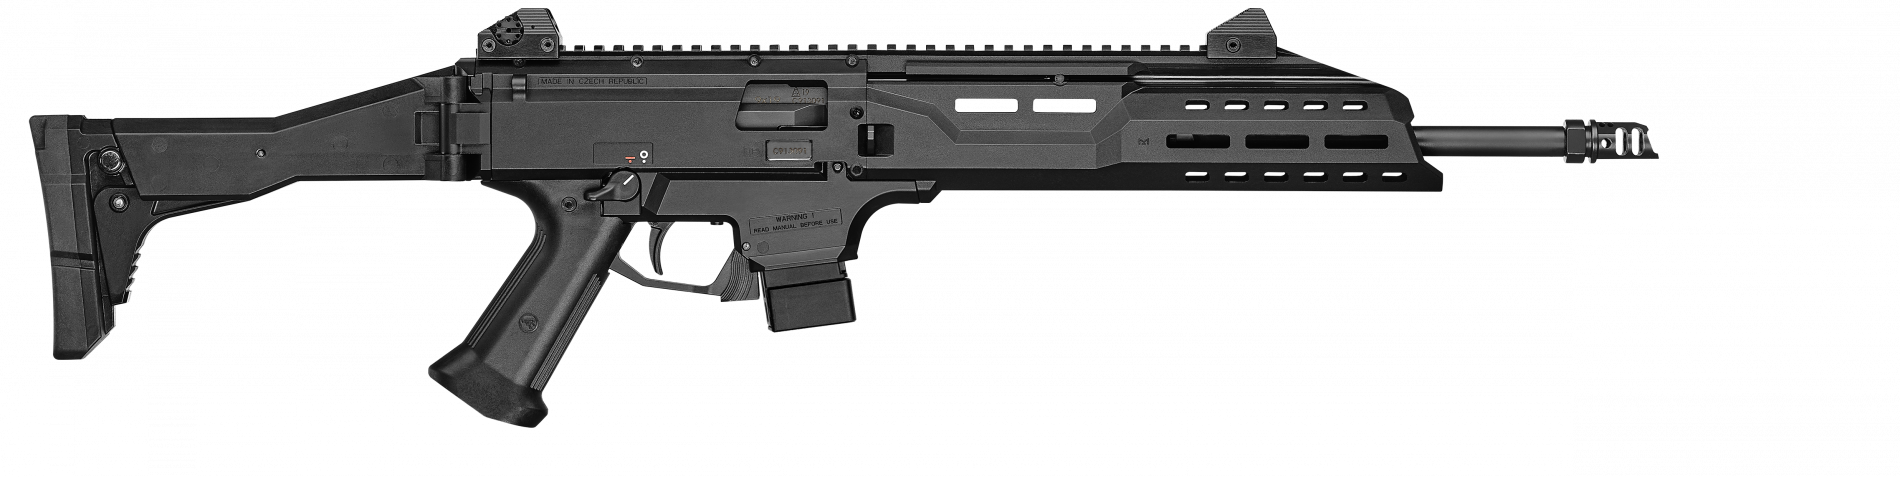 Scorpion Evo 3 S1 Carbine